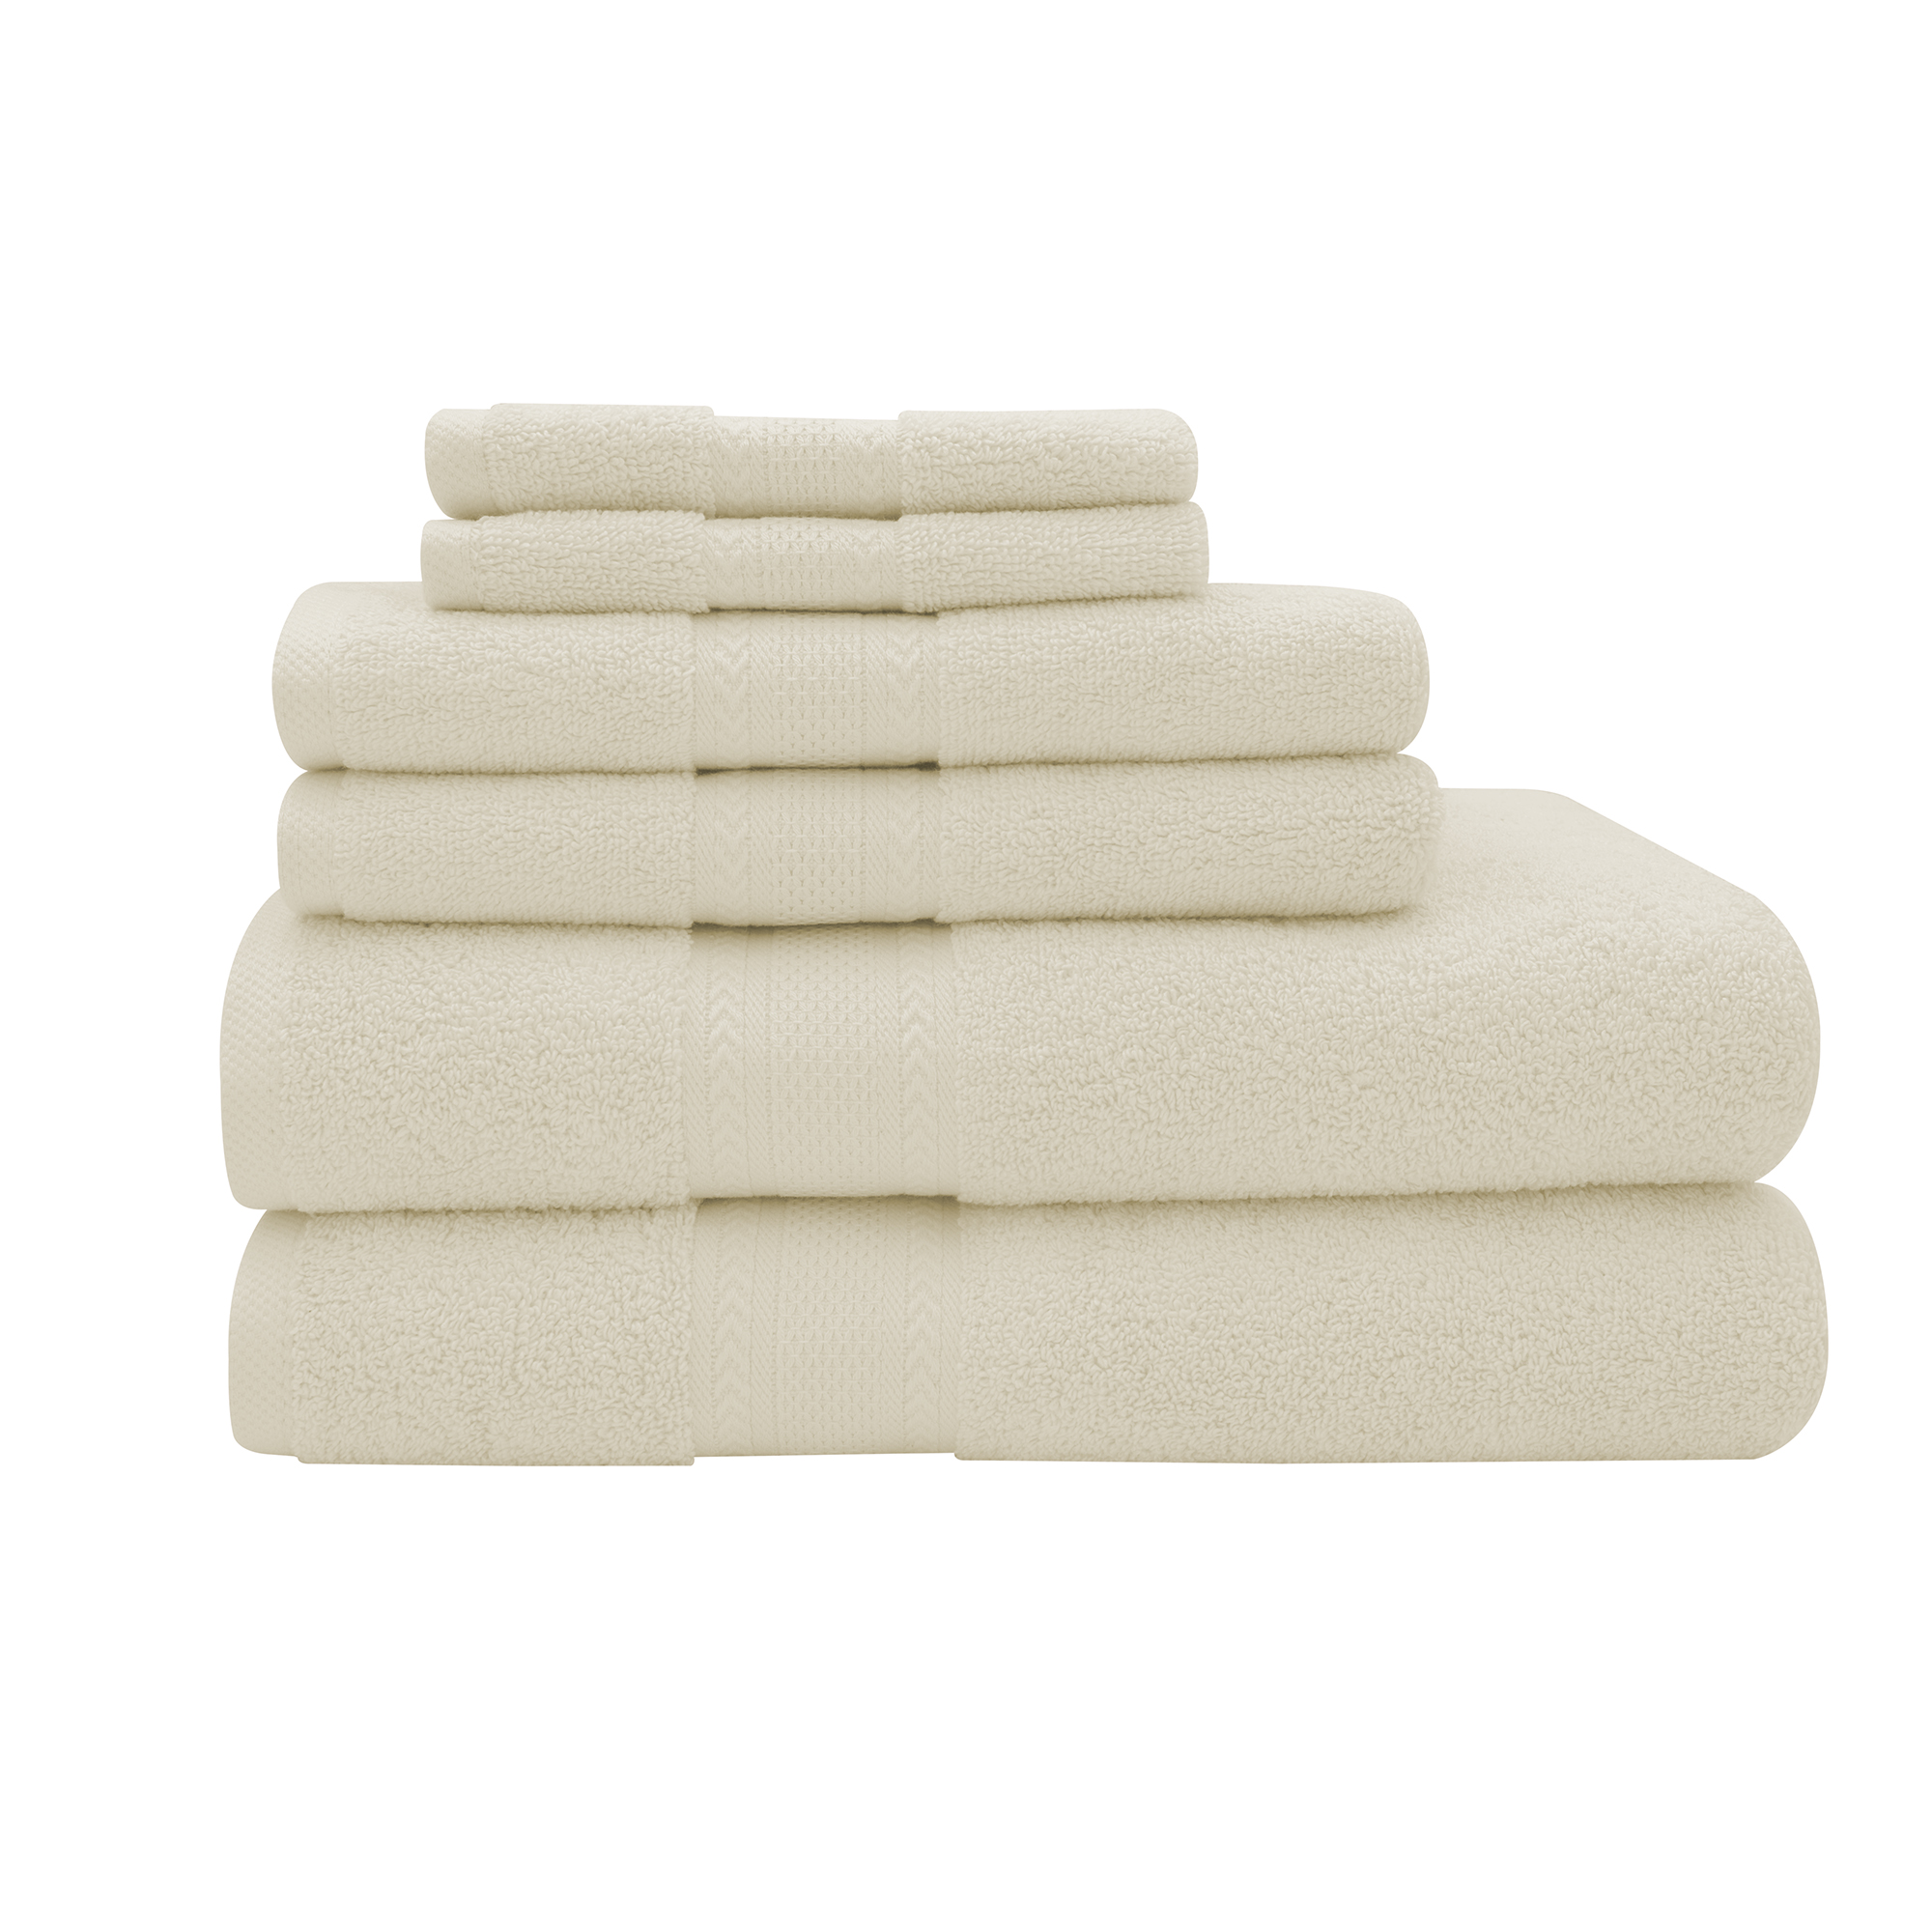 Endure Luxury Super Soft 100 Percent Cotton 6 Piece Bath Towel Set - image 1 of 3